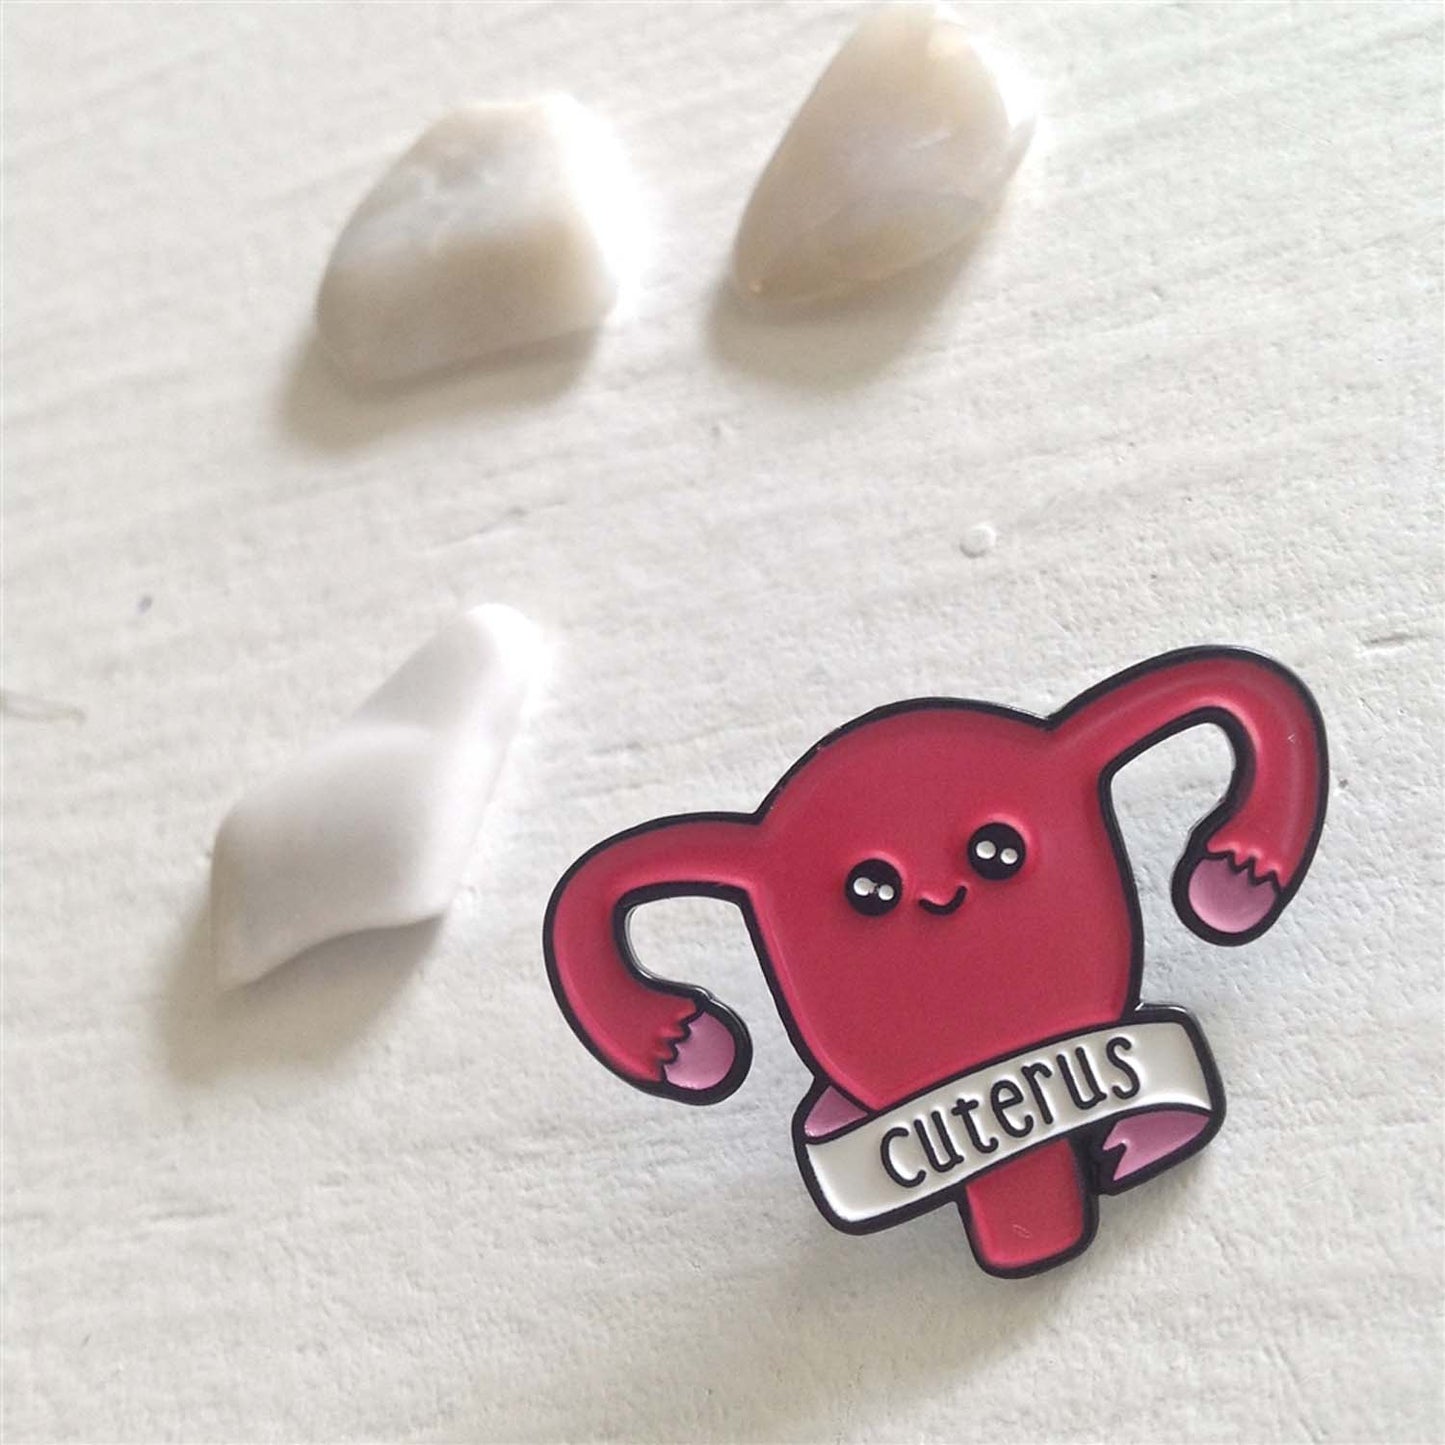 Cuterus - Cute Uterus Lapel Pin